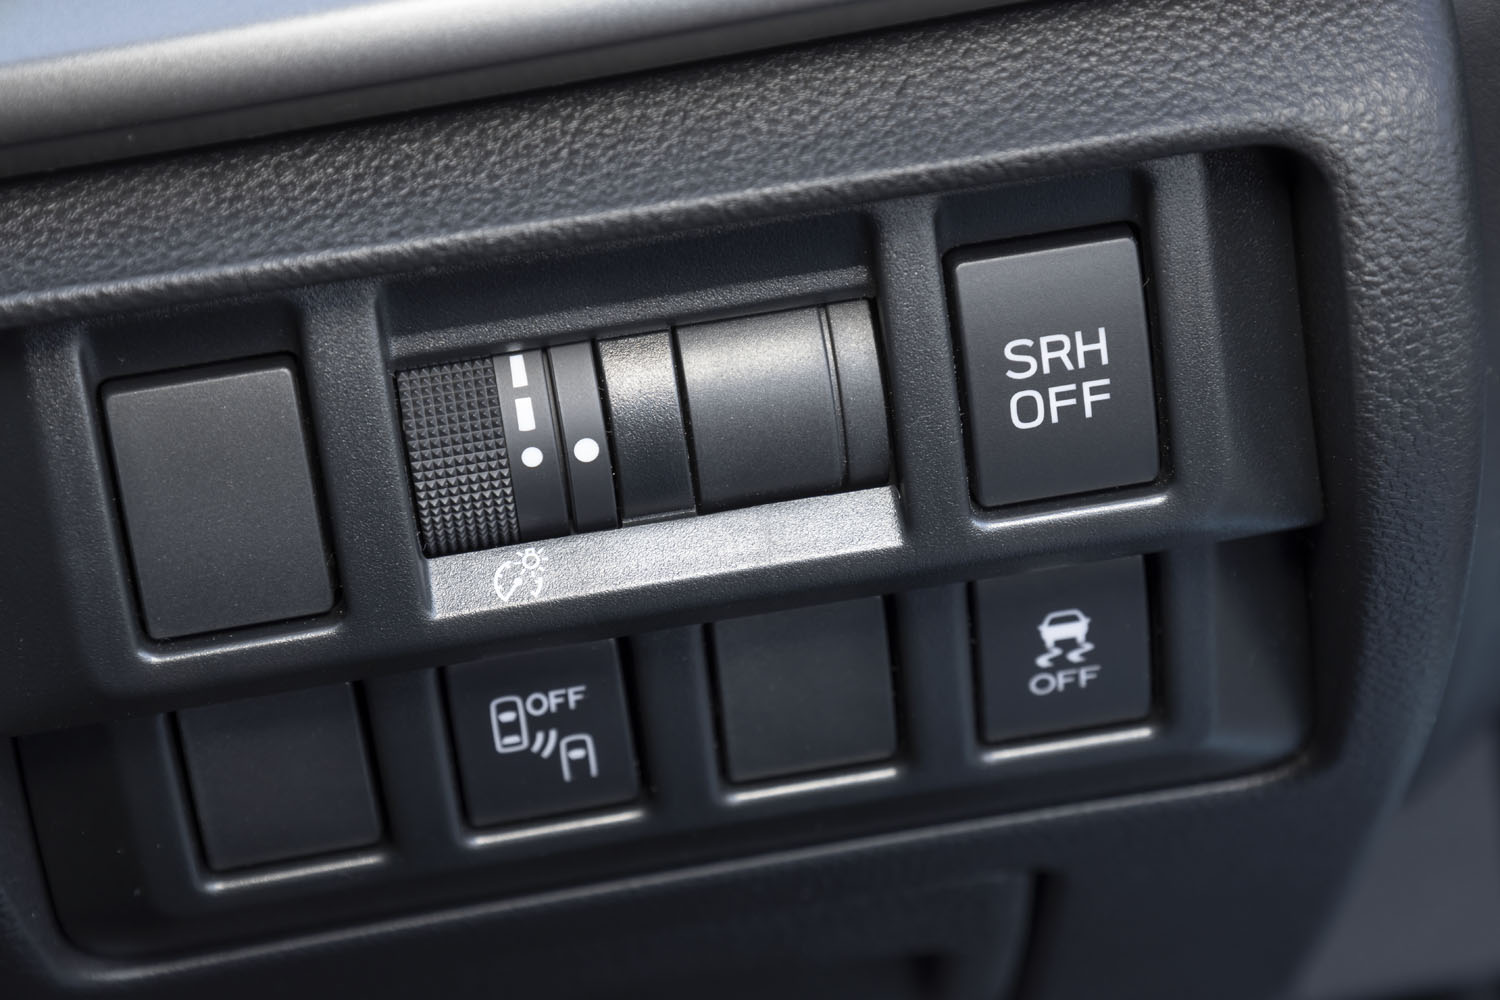 ダッシュボード右端に備わる操作パネル。「SRH」とはステアリング連動ヘッドライト（Steering Responsive Headlight）の略である。